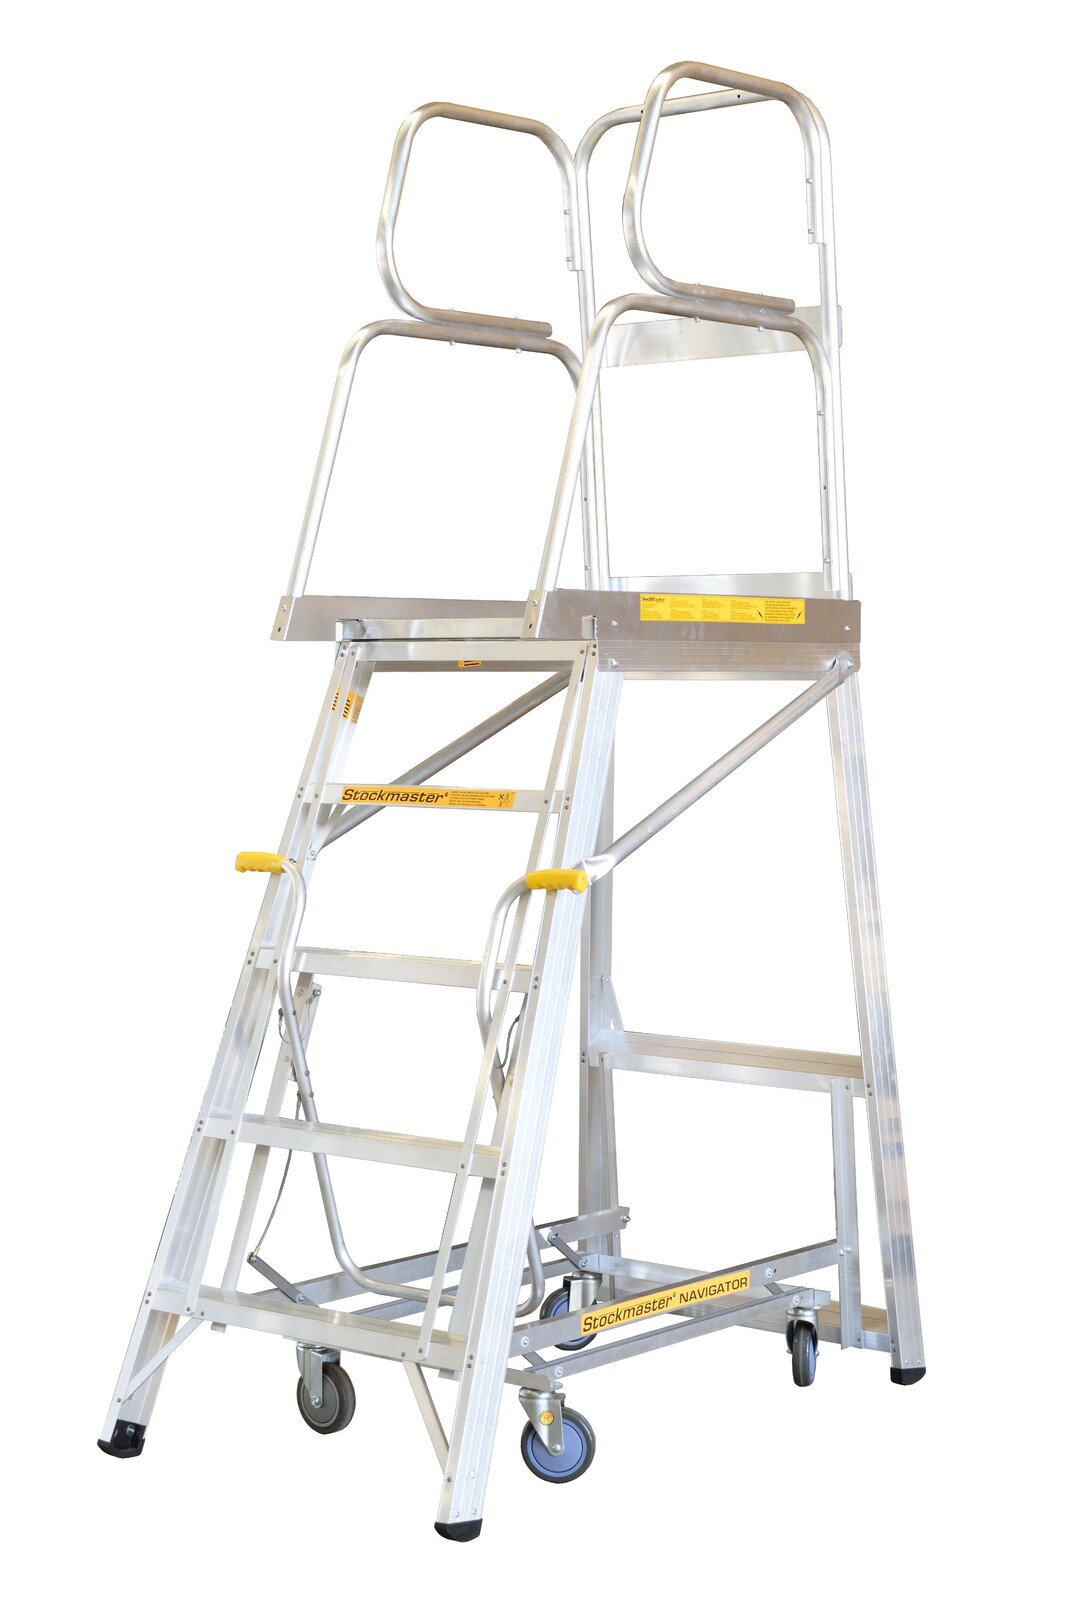 Stockmaster 150kg Rated Mobile Work Platform Ladder Navigator - 2.6m